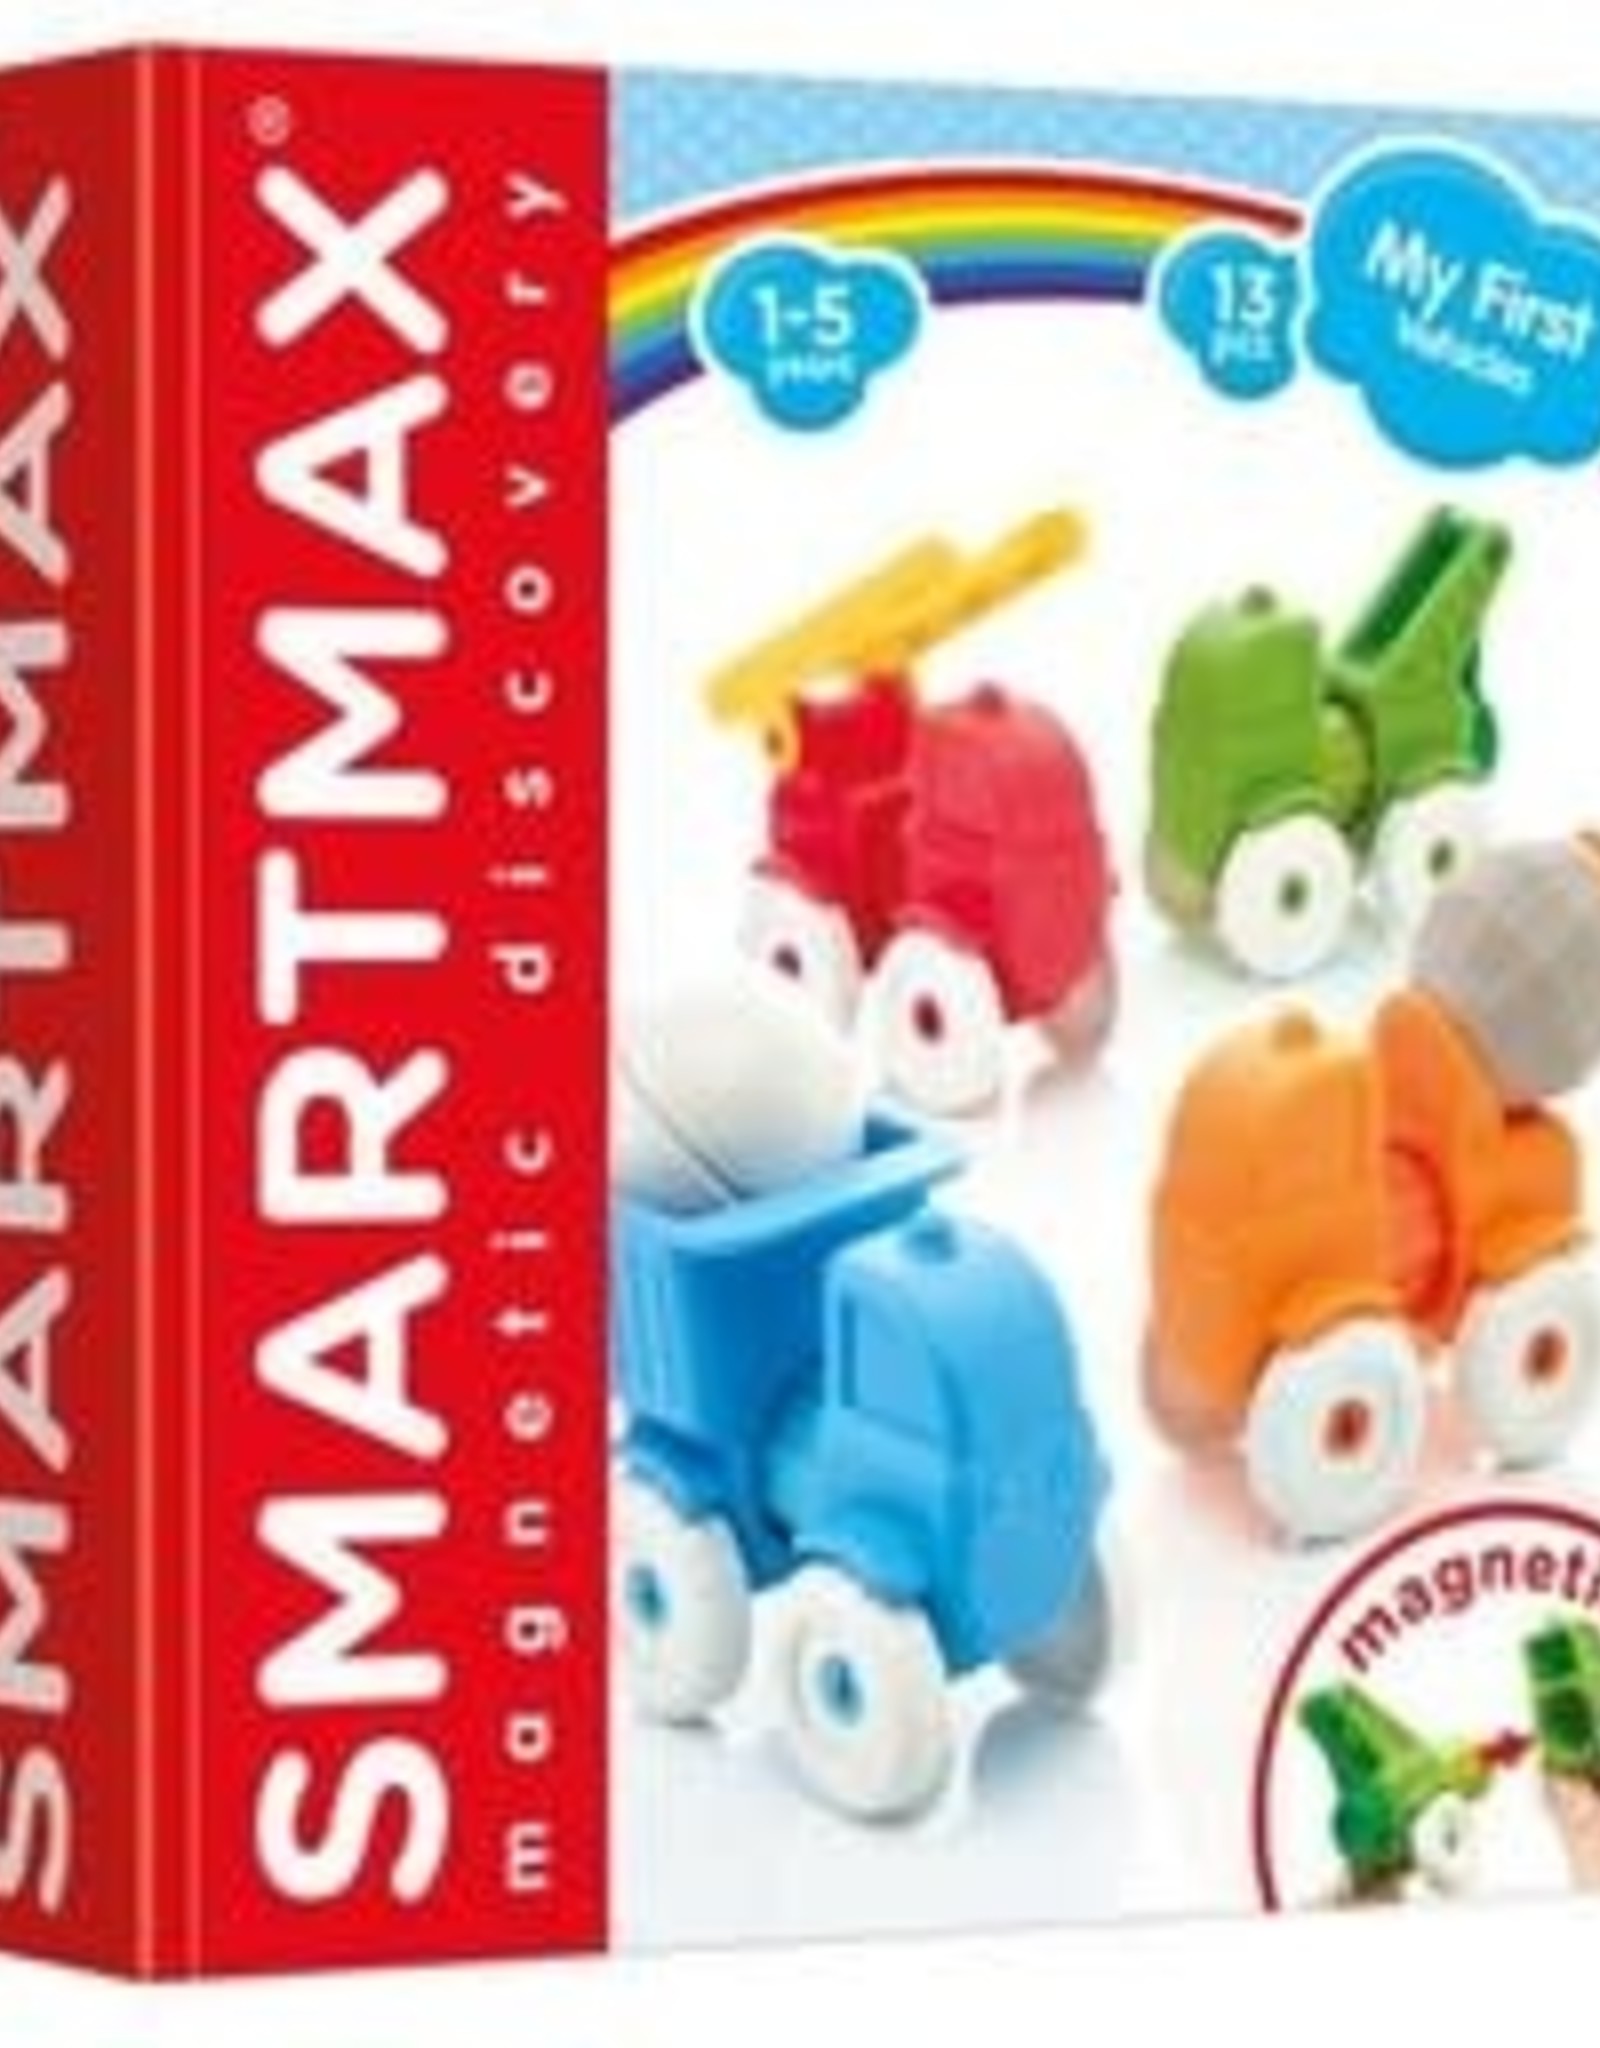 SmartMax SmartMax - My First Vehicles